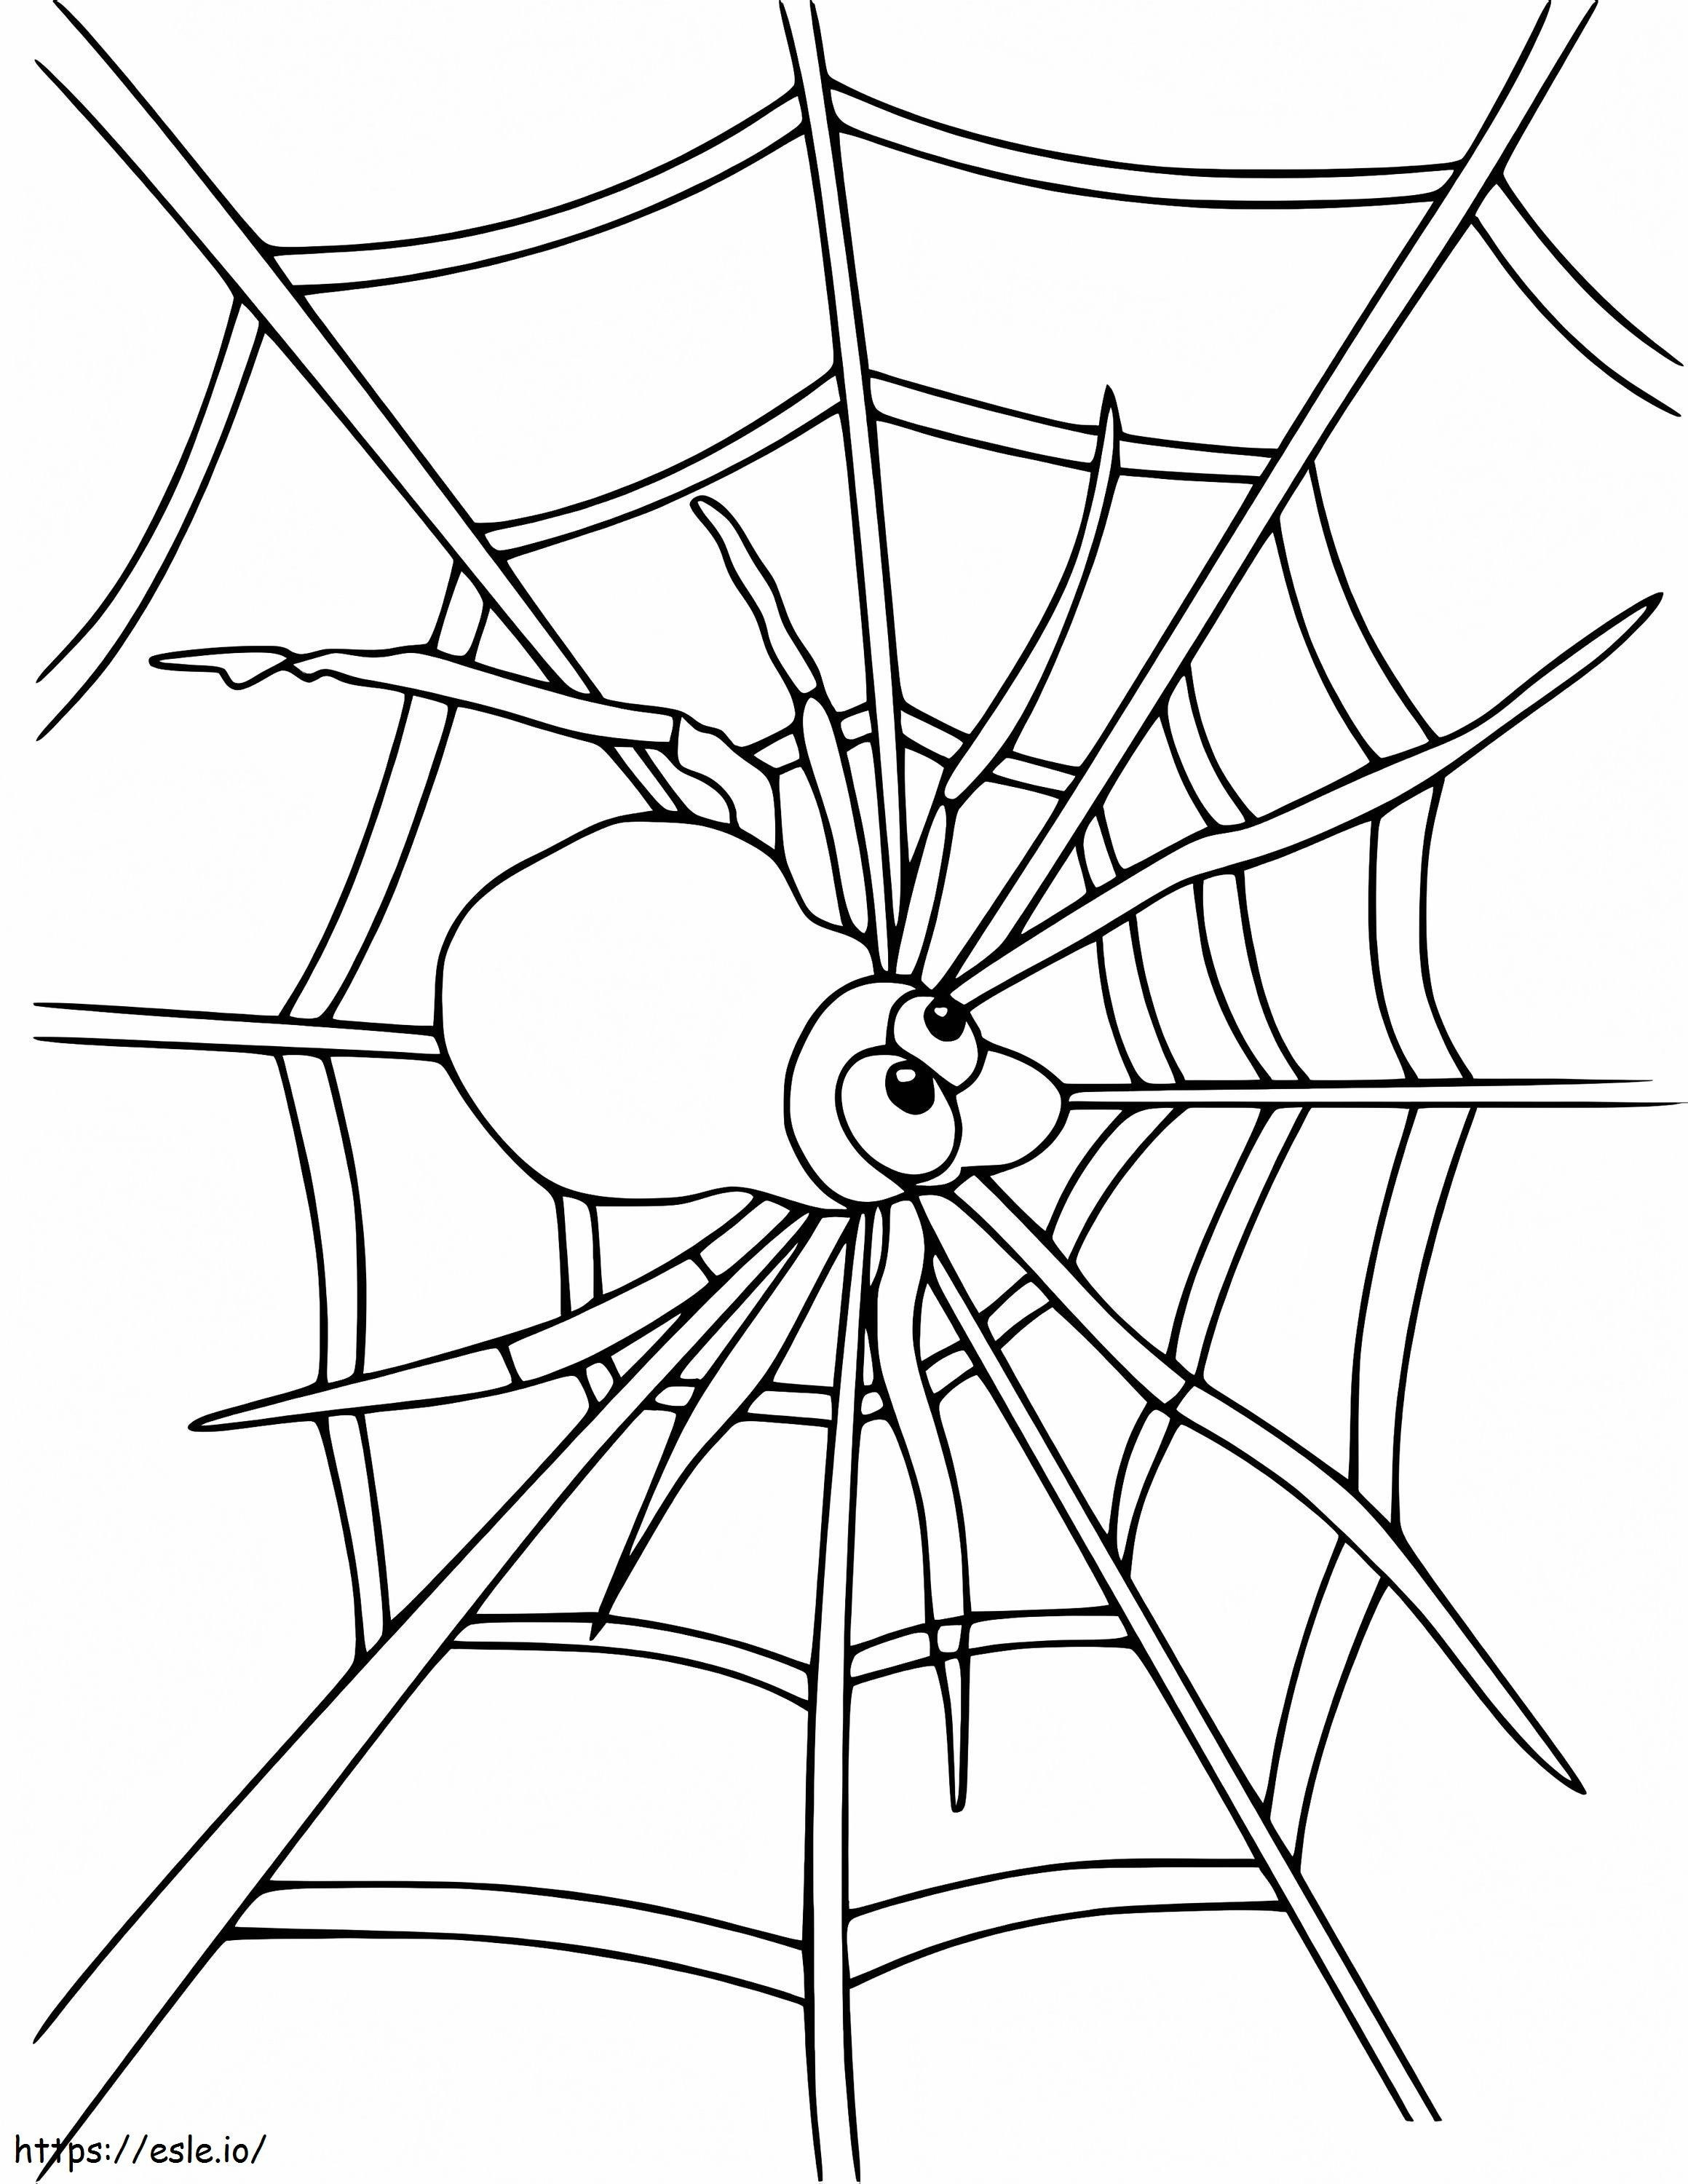 Spinne im Spinnennetz 3 ausmalbilder